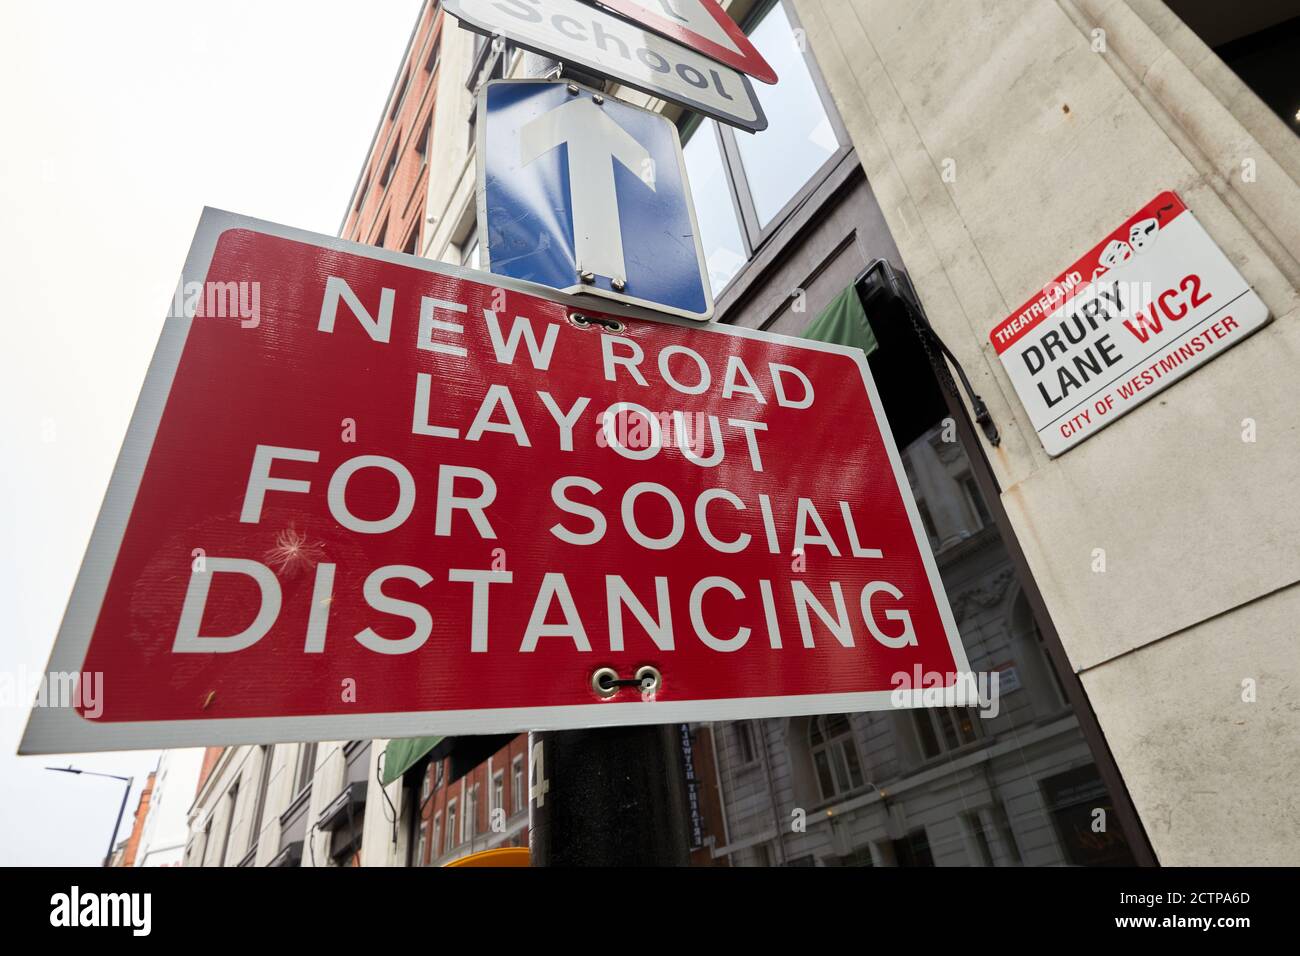 Londres, Royaume-Uni. - 21 sept 2020: Un panneau de rue dans Drury Lane avertit les conducteurs de nouvelles mesures de disposition pour aider à distancer social dans le sillage de la pandémie du coronavirus. Banque D'Images